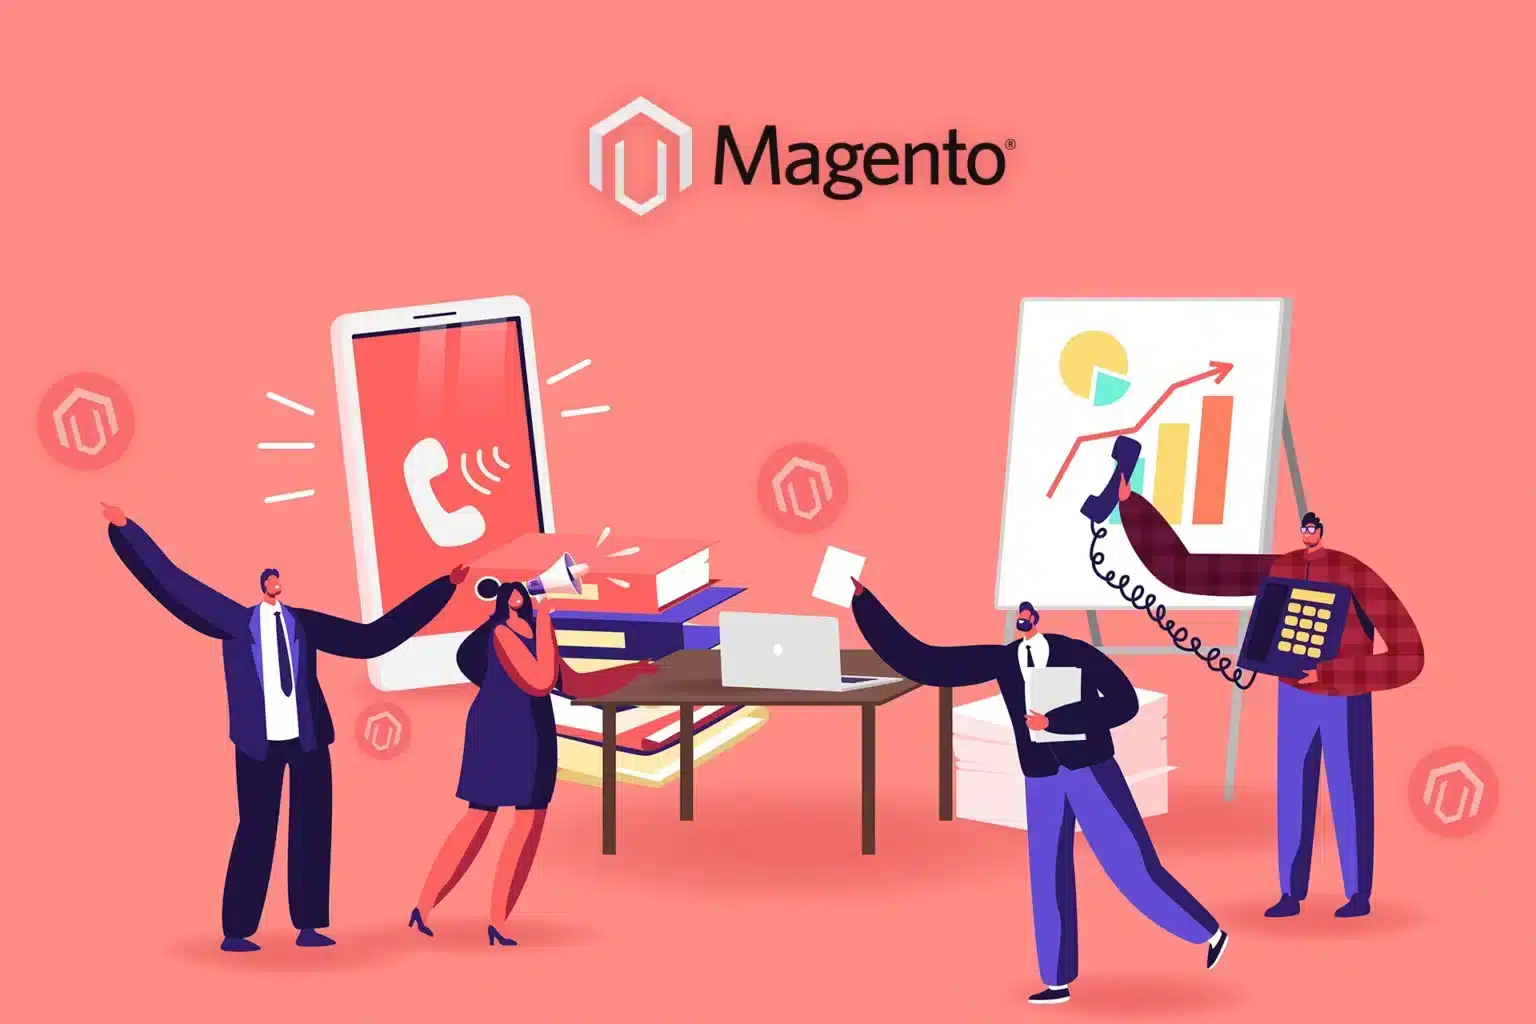 Ilustración, actividades de ecommerce y marketing con la plataforma Magento.